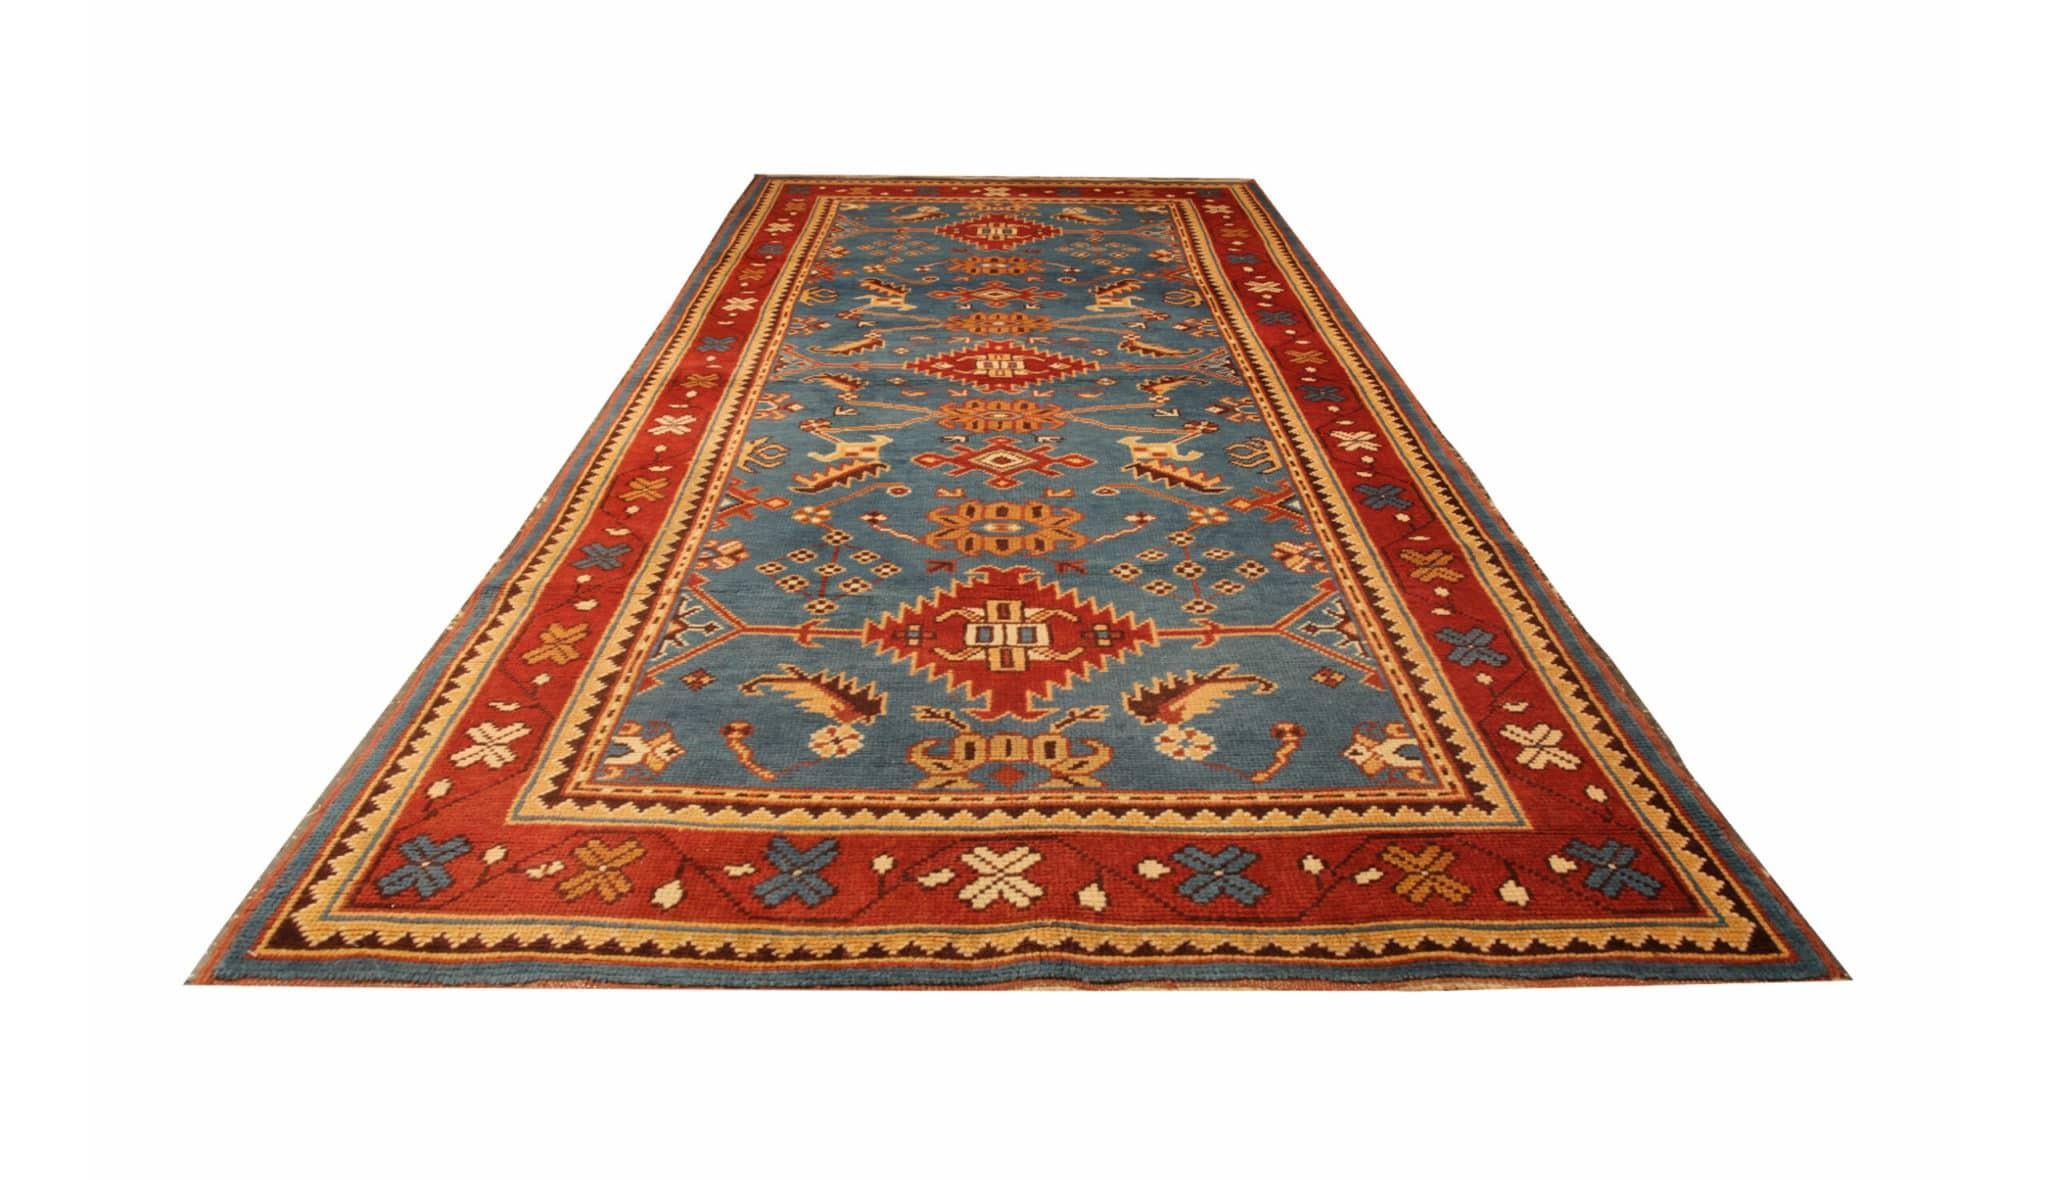 Vintage Teppiche, Türkische Teppiche, Oushak Teppiche, Handgefertigte Orientalische Teppiche zu verkaufen (Art déco) im Angebot